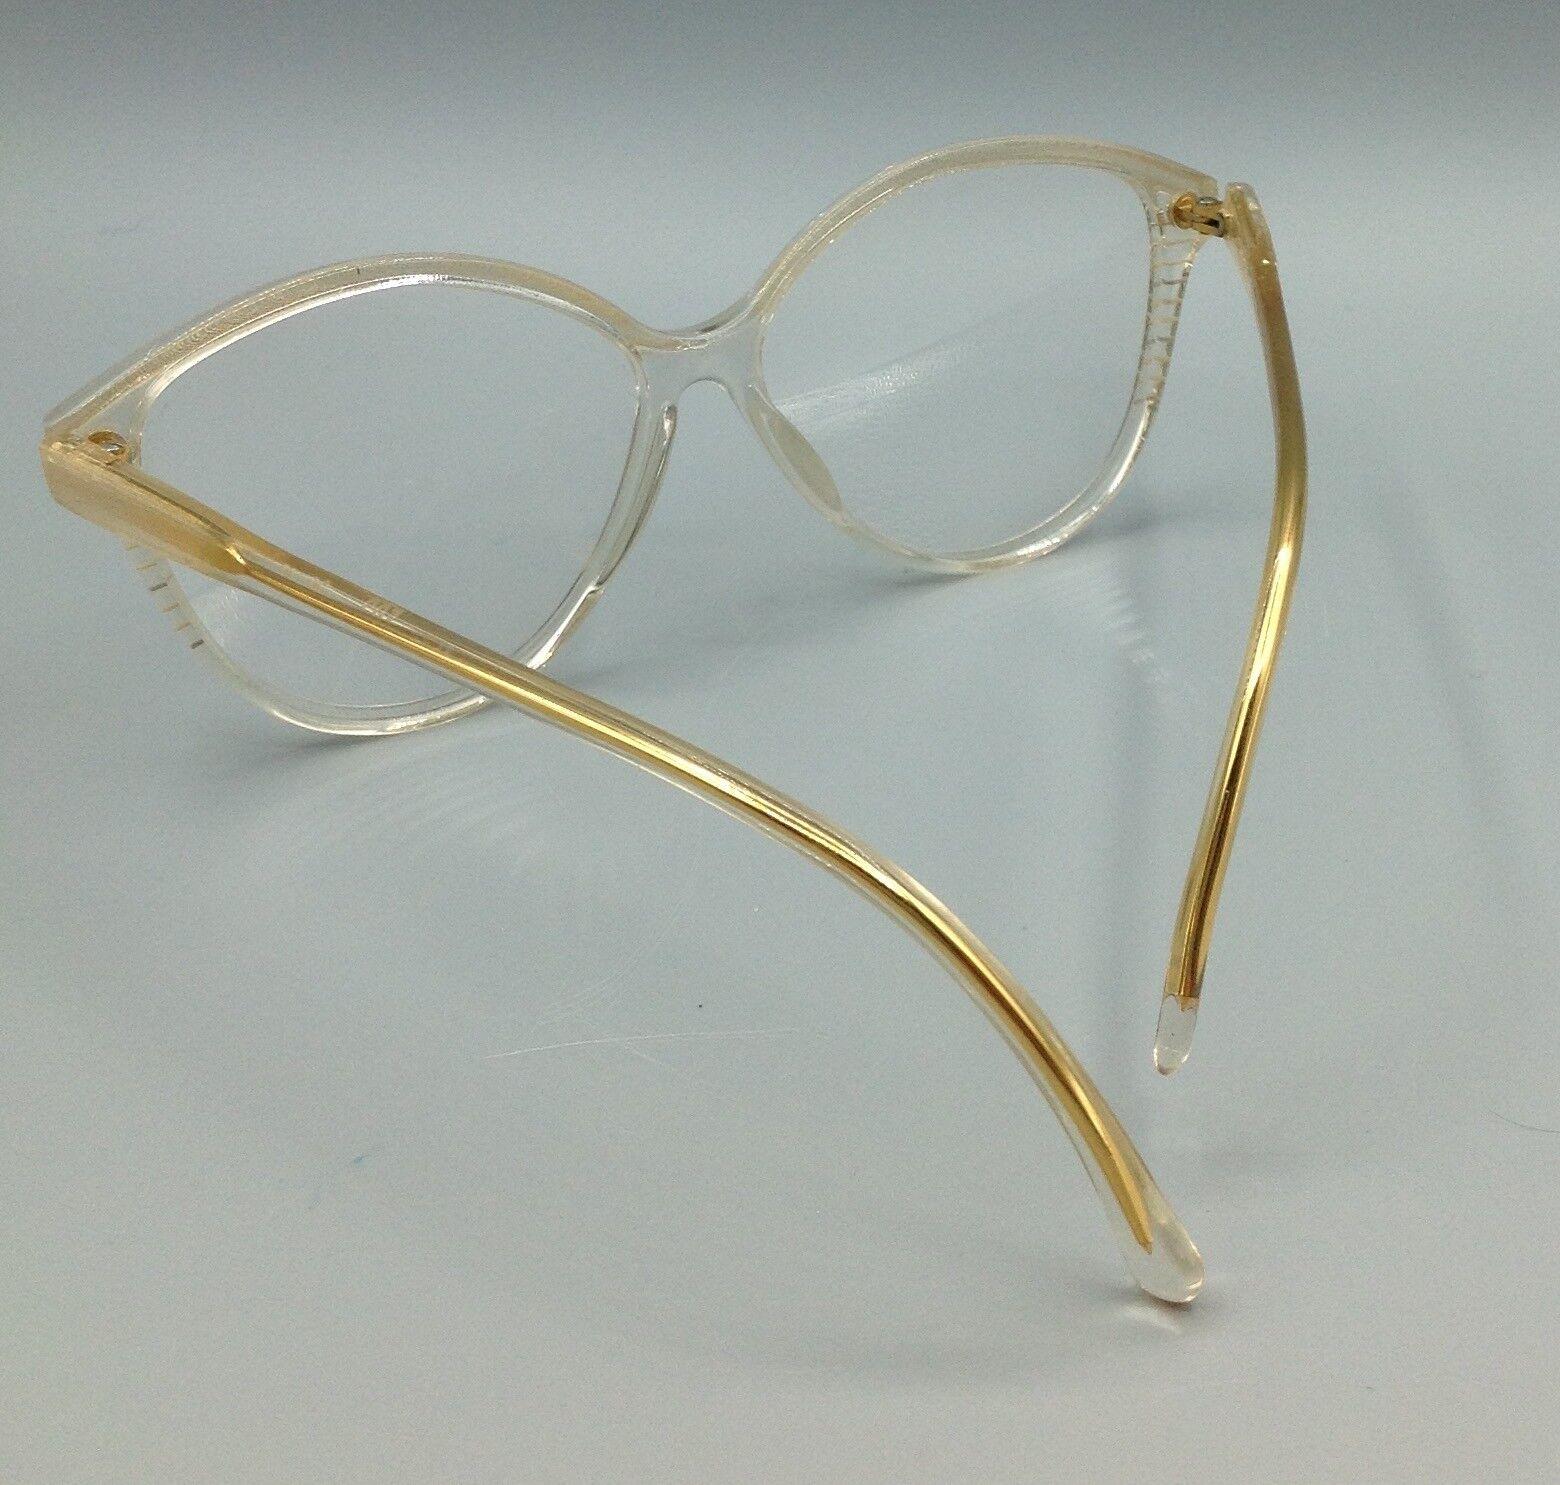 Vogart vintage occhiale model 263 eyewear frame brillen lunettes gafas